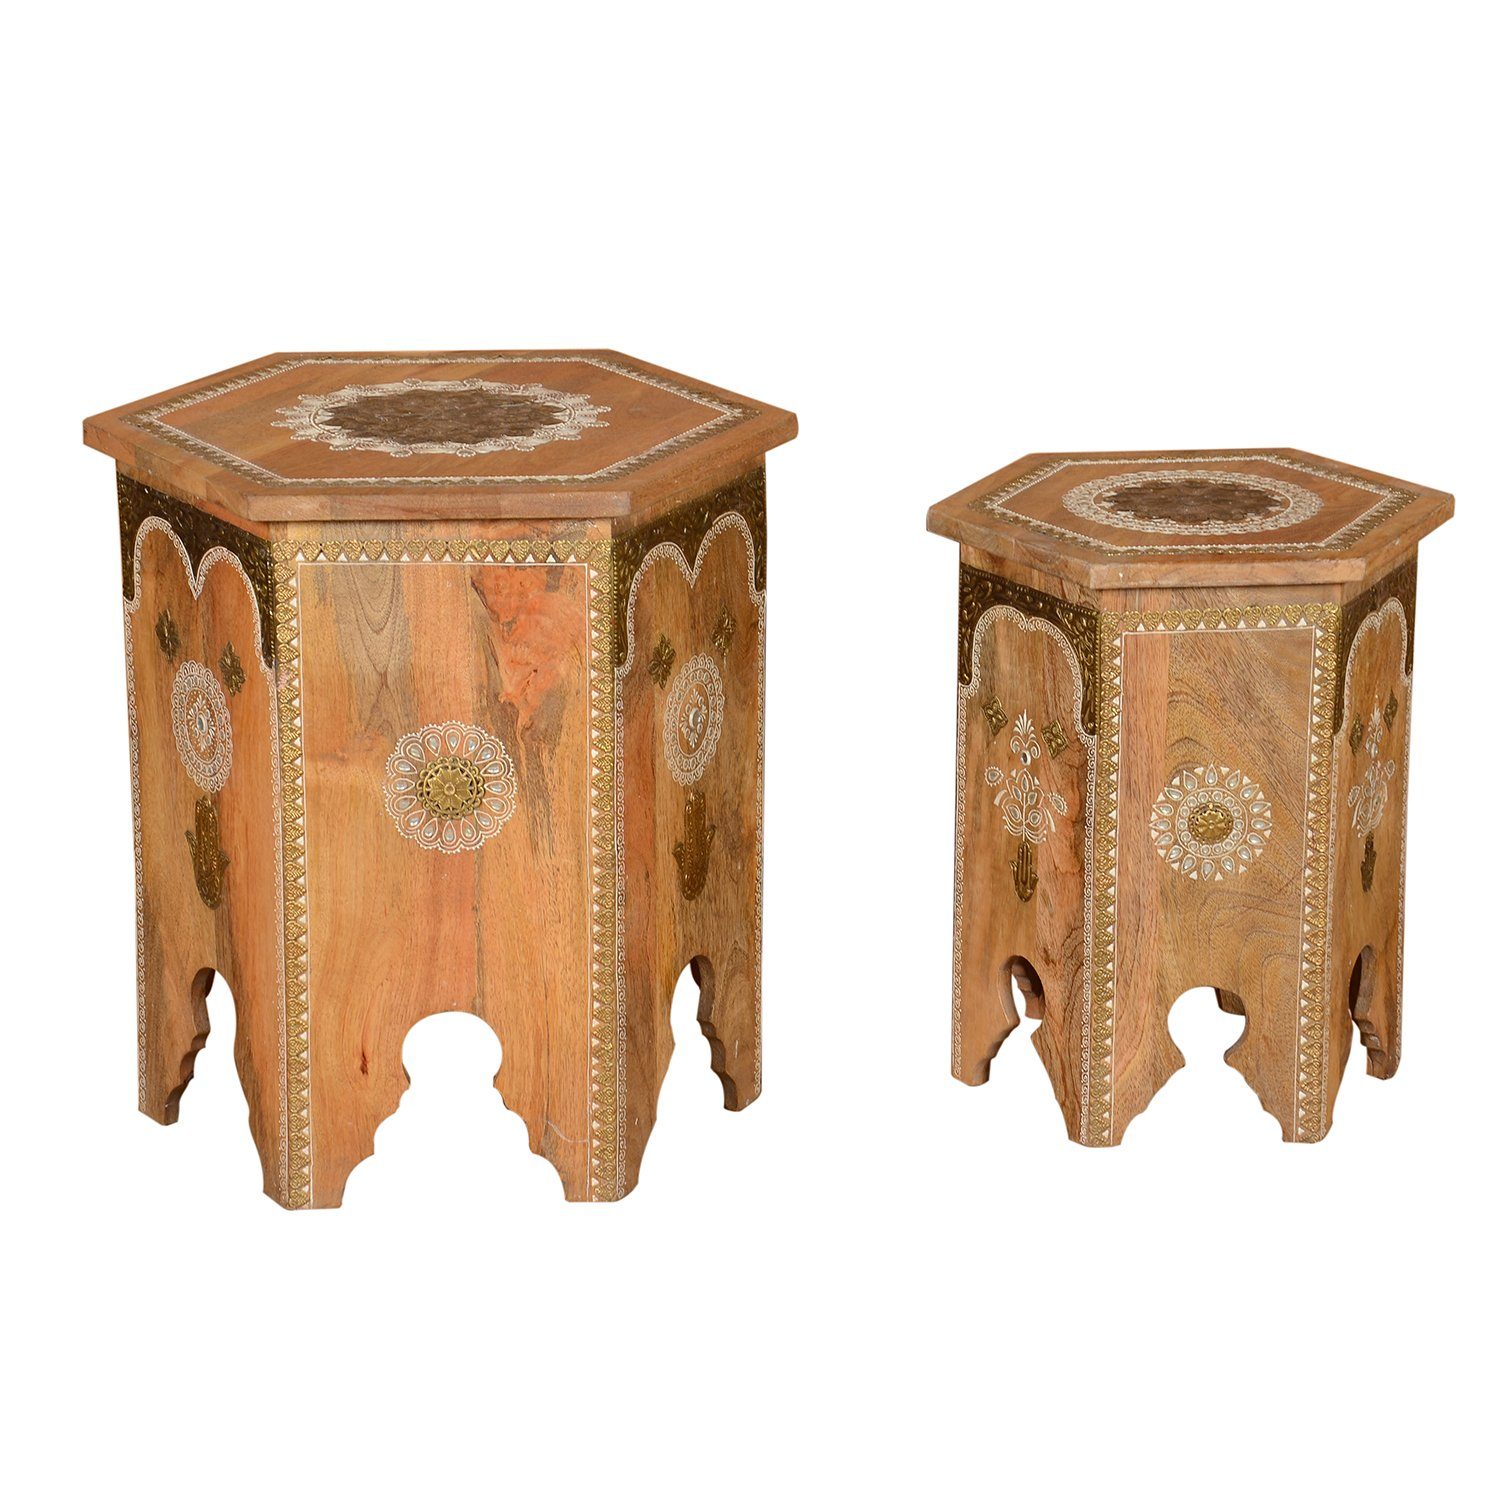 Casa Moro Beistelltisch »Orientalische Beistelltische Salman aus Massivholz  handverziert« (2 er Set), Marokkanische Couchtische Teetische im Vintage  Landhaus-Stil RK38-10 online kaufen | OTTO